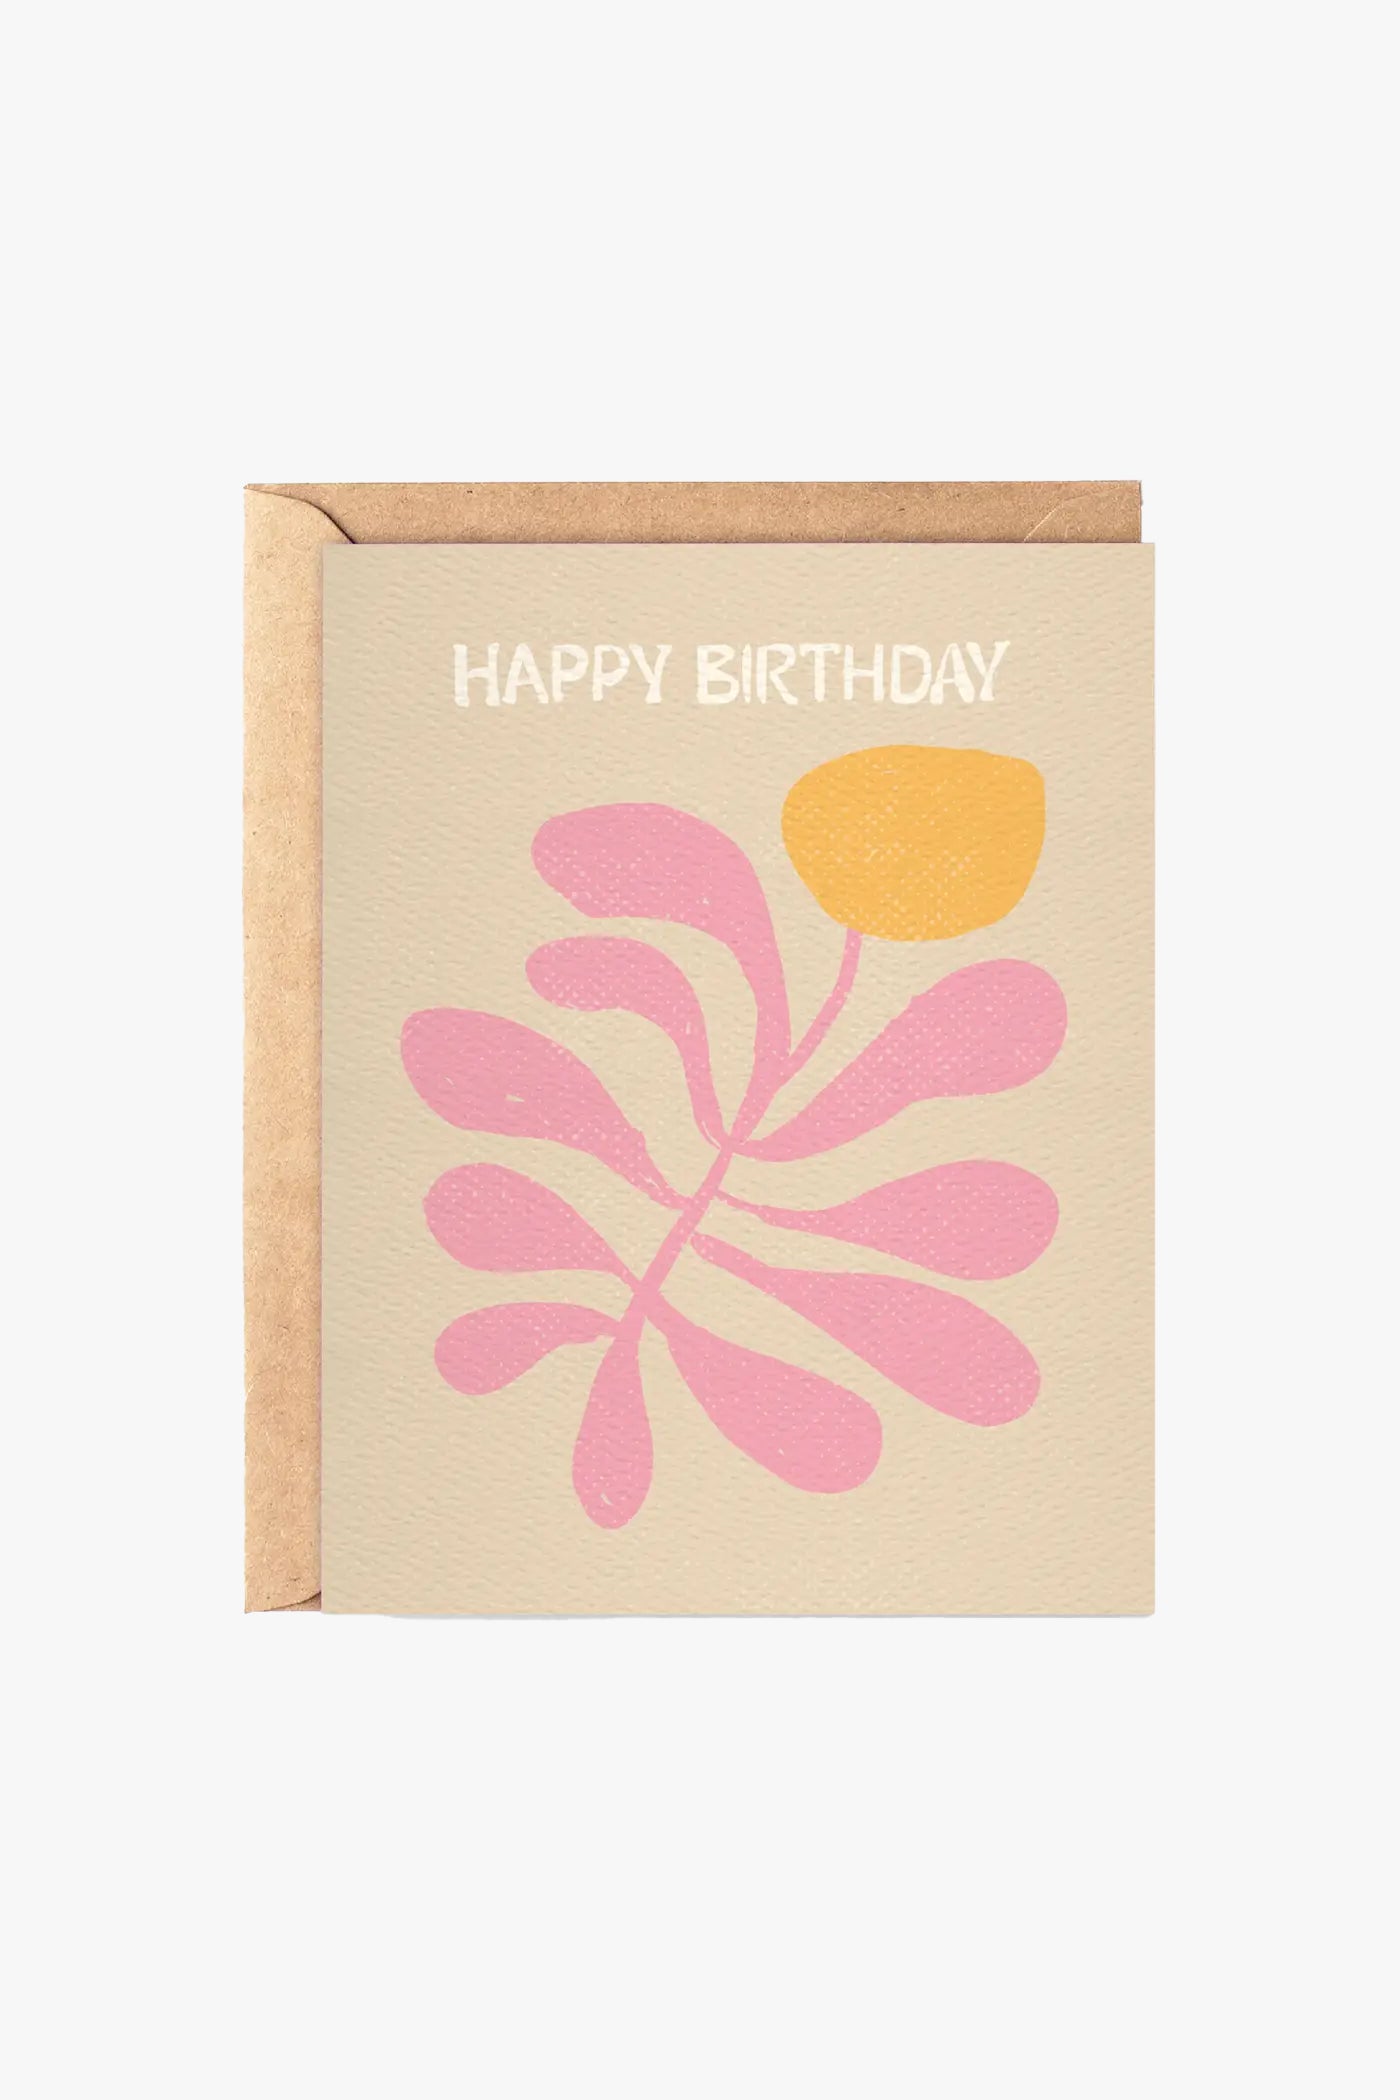 Daydream Prints Happy Birthday Coral Coastal Card